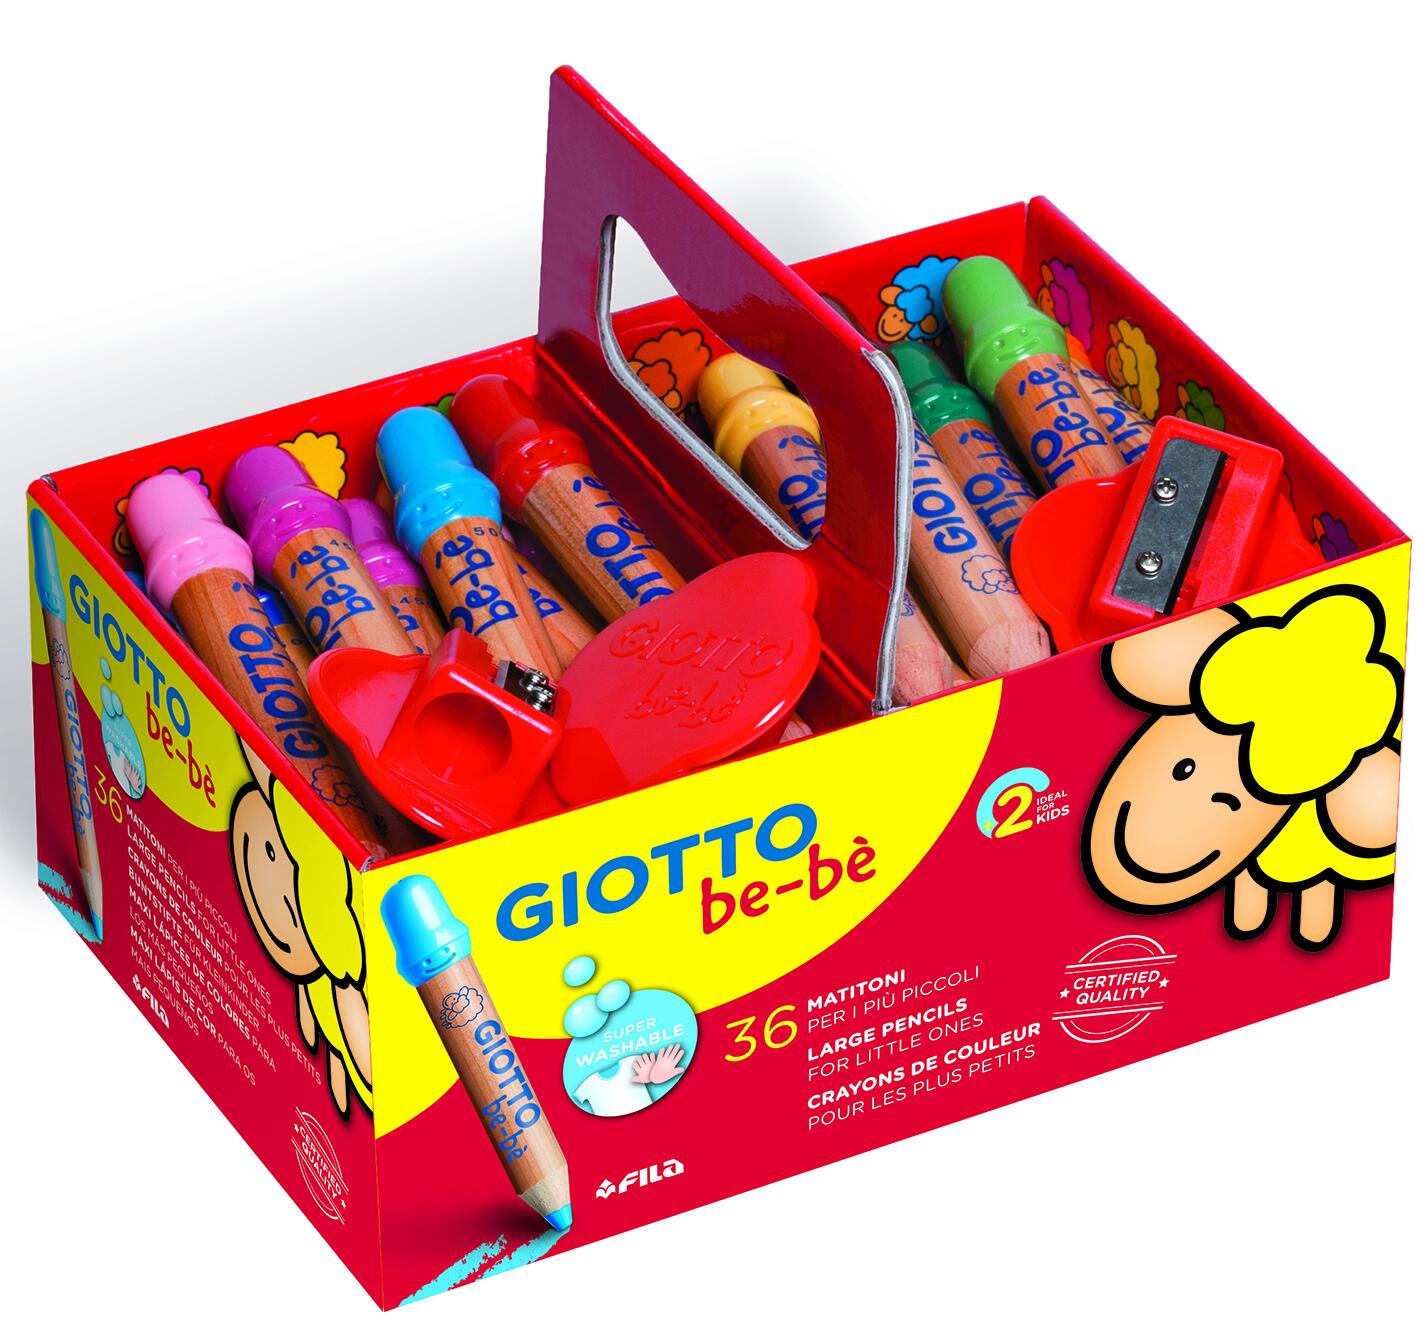 Schoolpack de 36 crayons de couleur - Giotto Be-bé